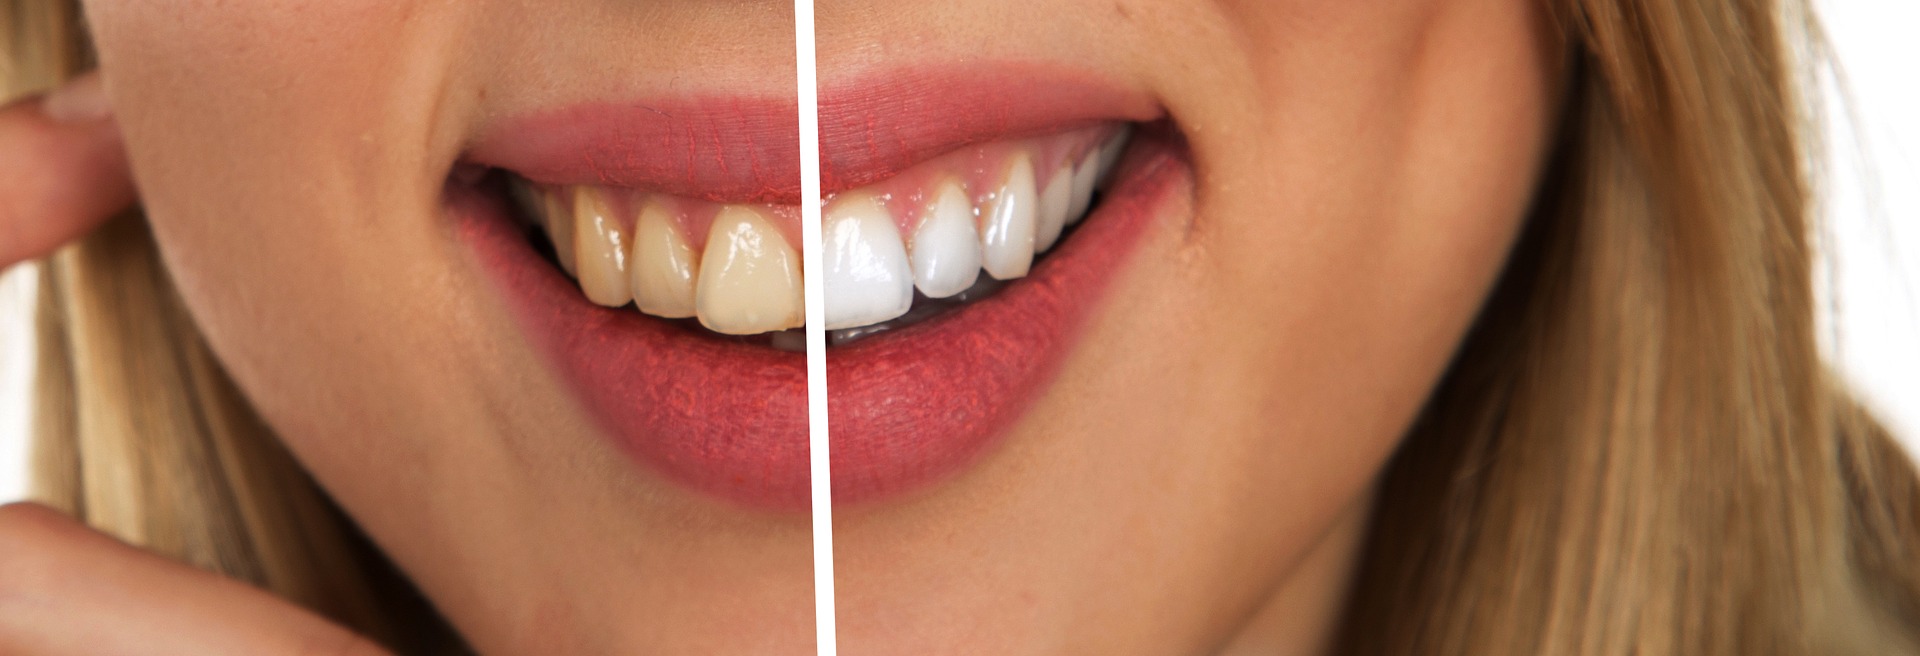 Co jeść i jak dbać o zęby by by były zdrowe i białe?